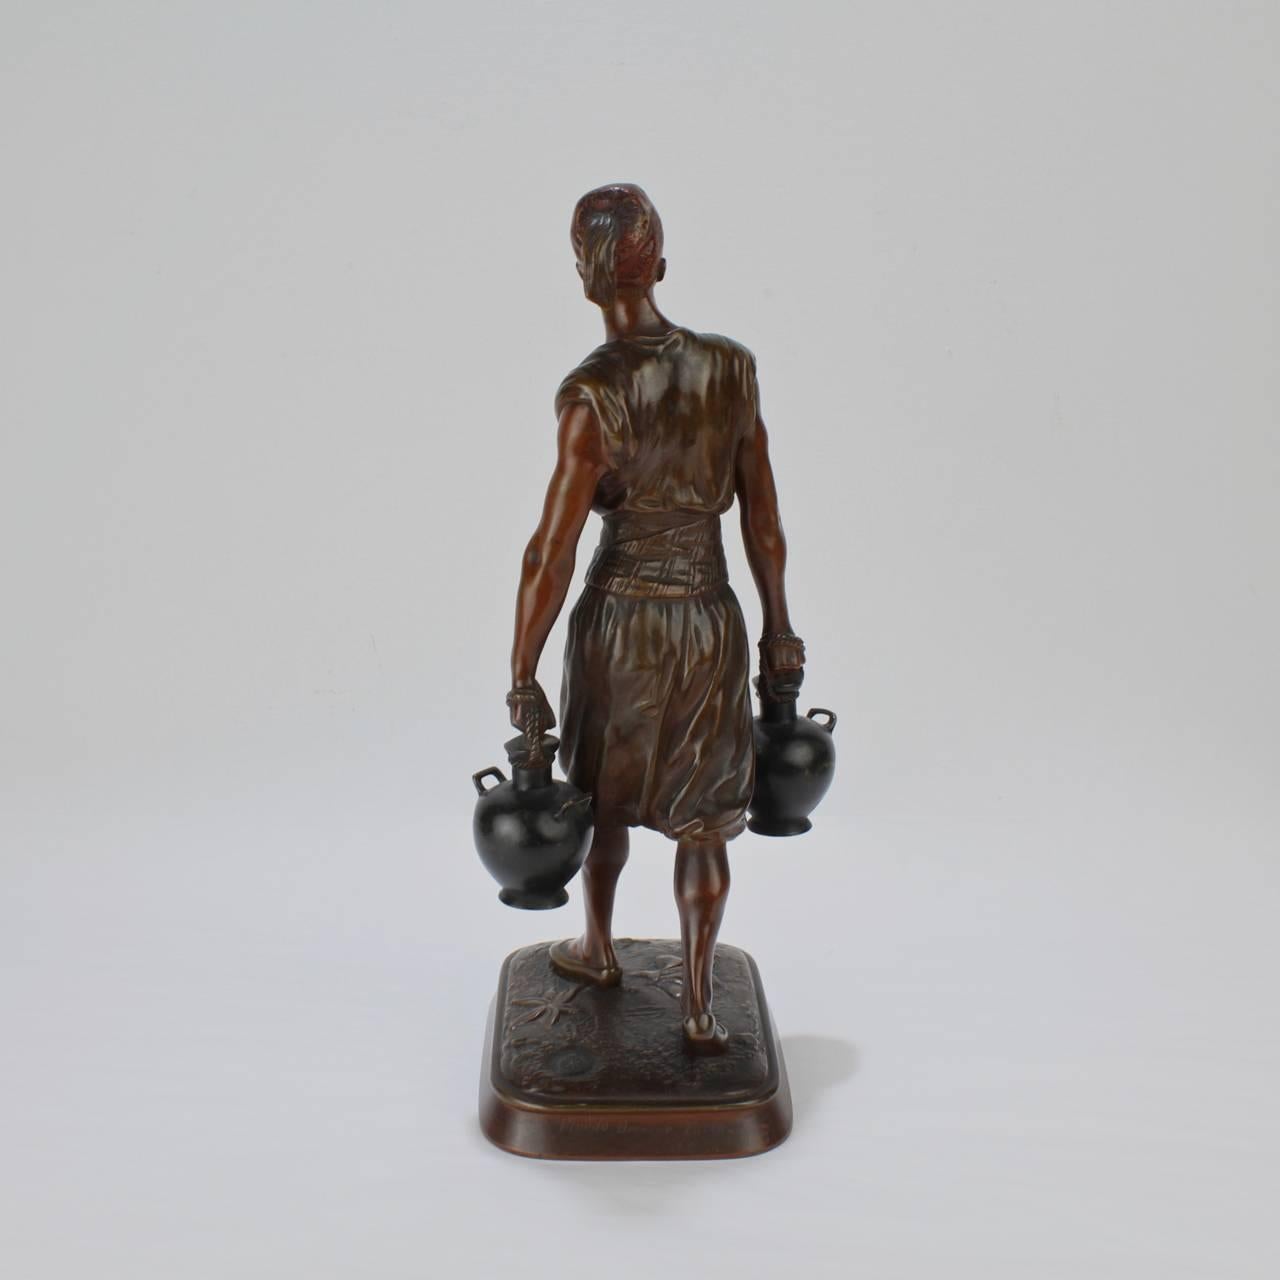 debut bronze sculpture